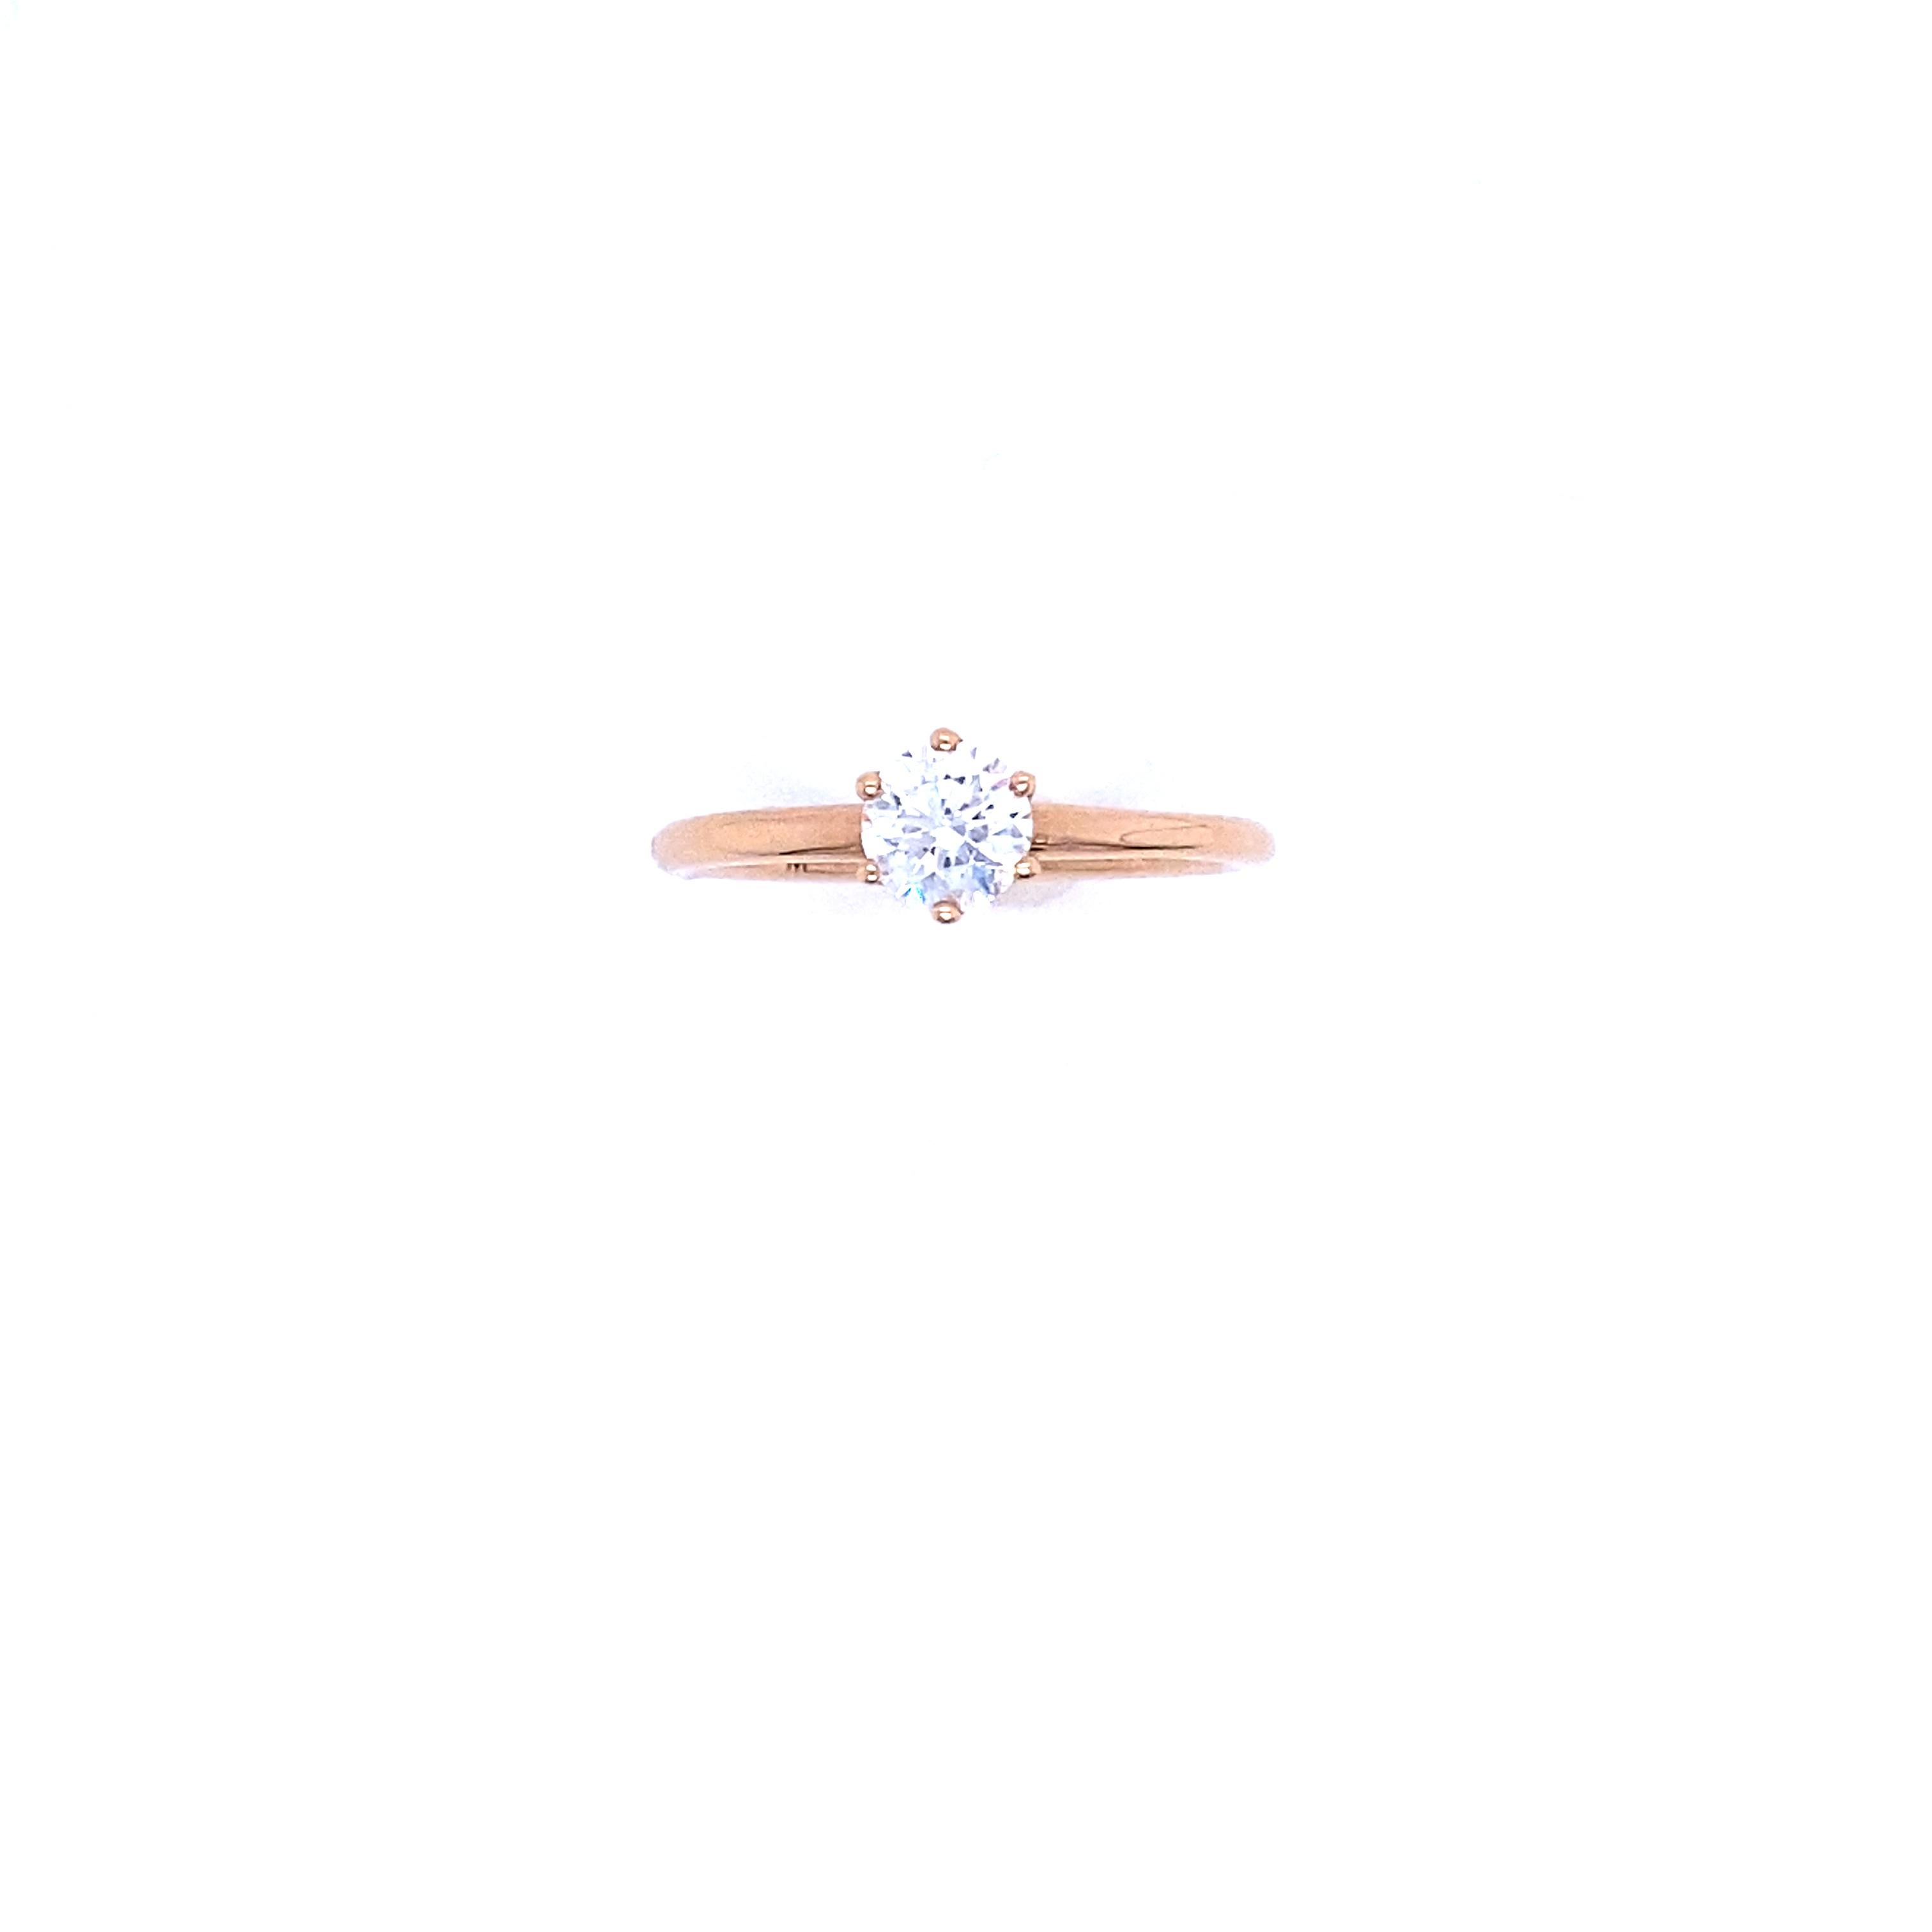 Bague en or rose certifiée GIA avec un diamant de 0,50 carat, couleur E.
Superbe diamant de 0,50 carat certifié par le GIA. Le diamant est de taille ronde et brillante. Les degrés de taille, de symétrie et de polissage du diamant indiquent la